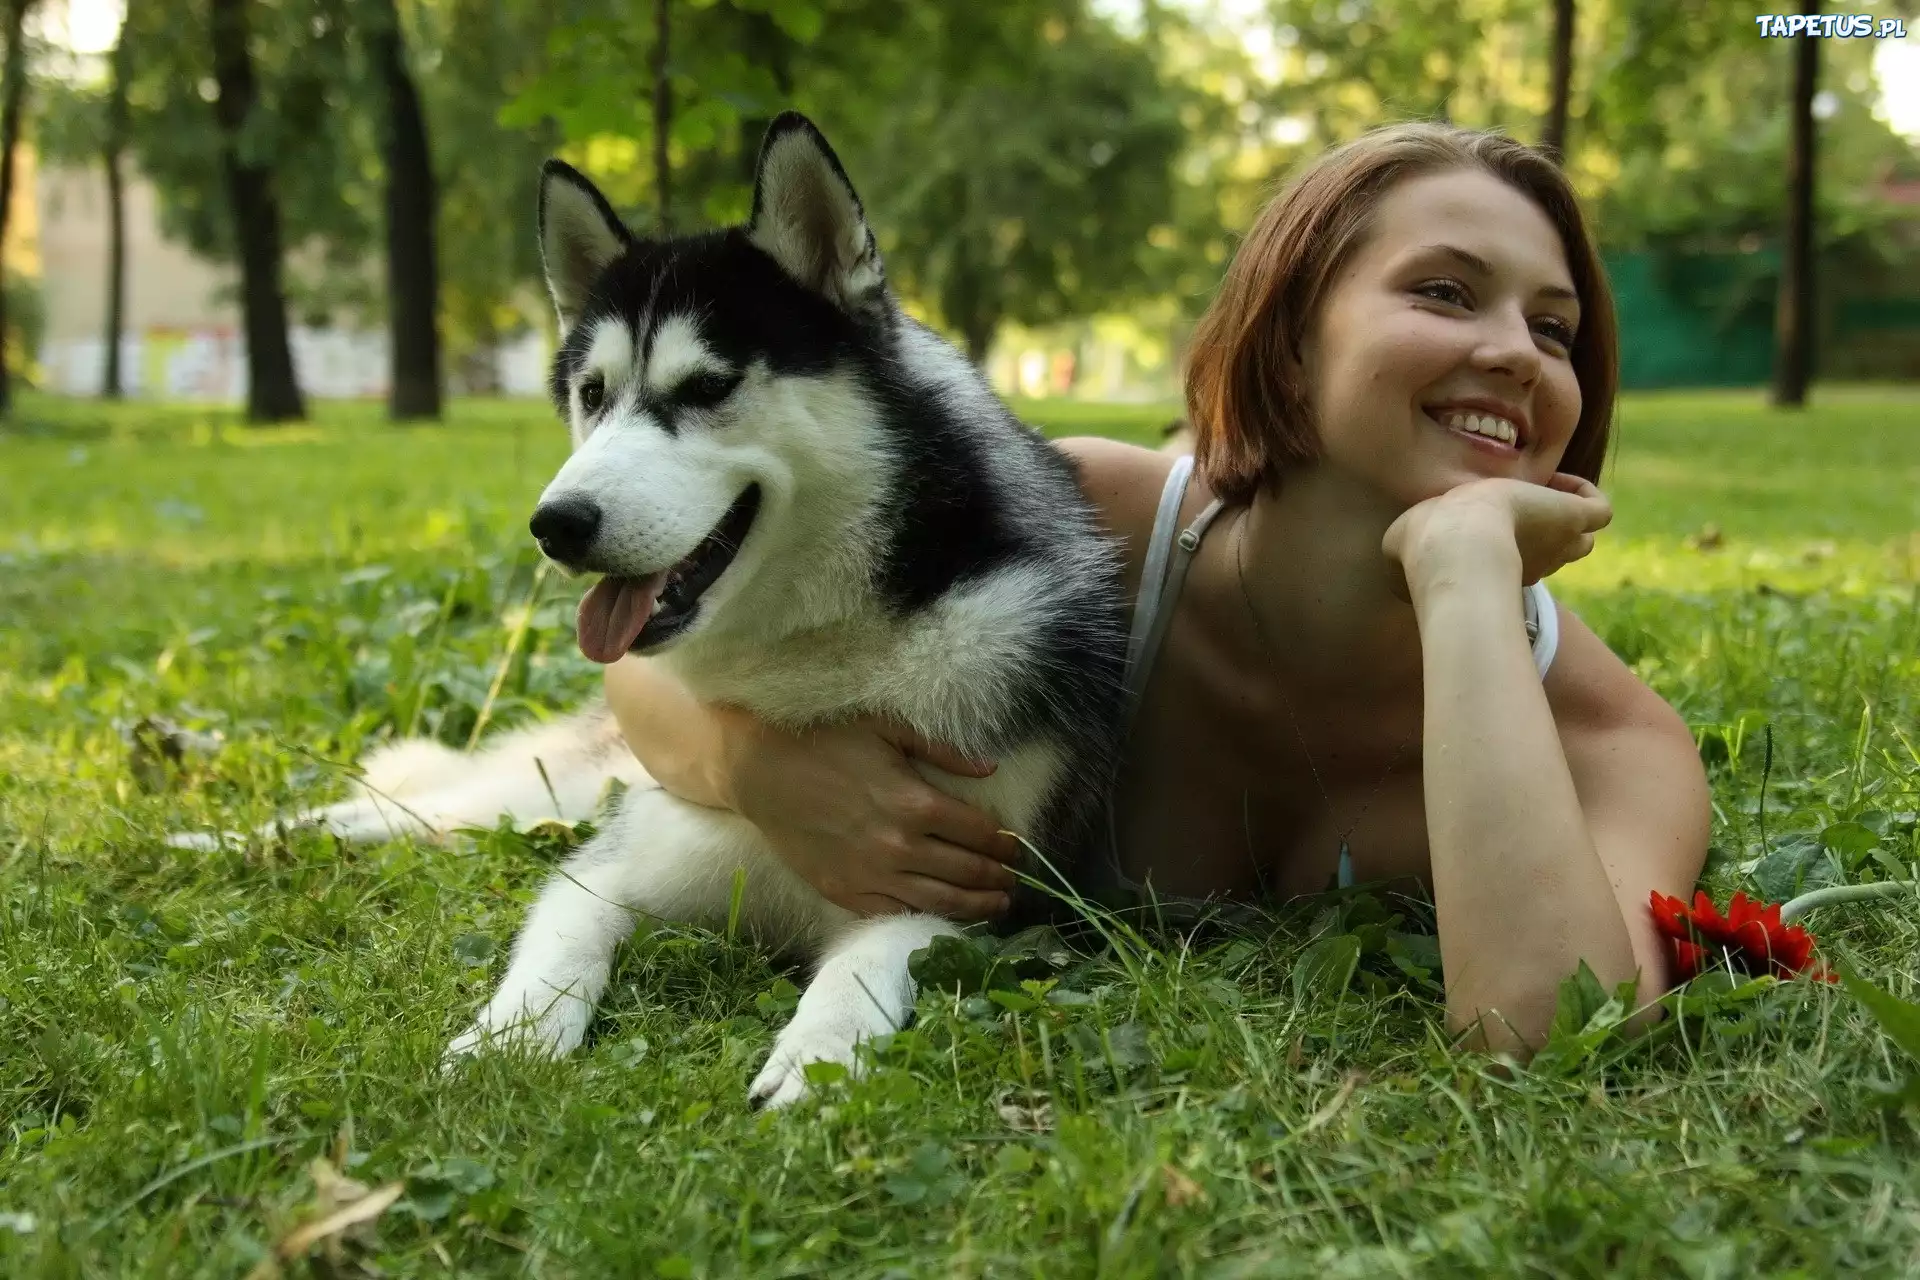 Картинка девушки с собакой. Девушка с собакой. Девушка с собакой фотосессия. Девушка и хаски. Красивая девушка с собачкой.